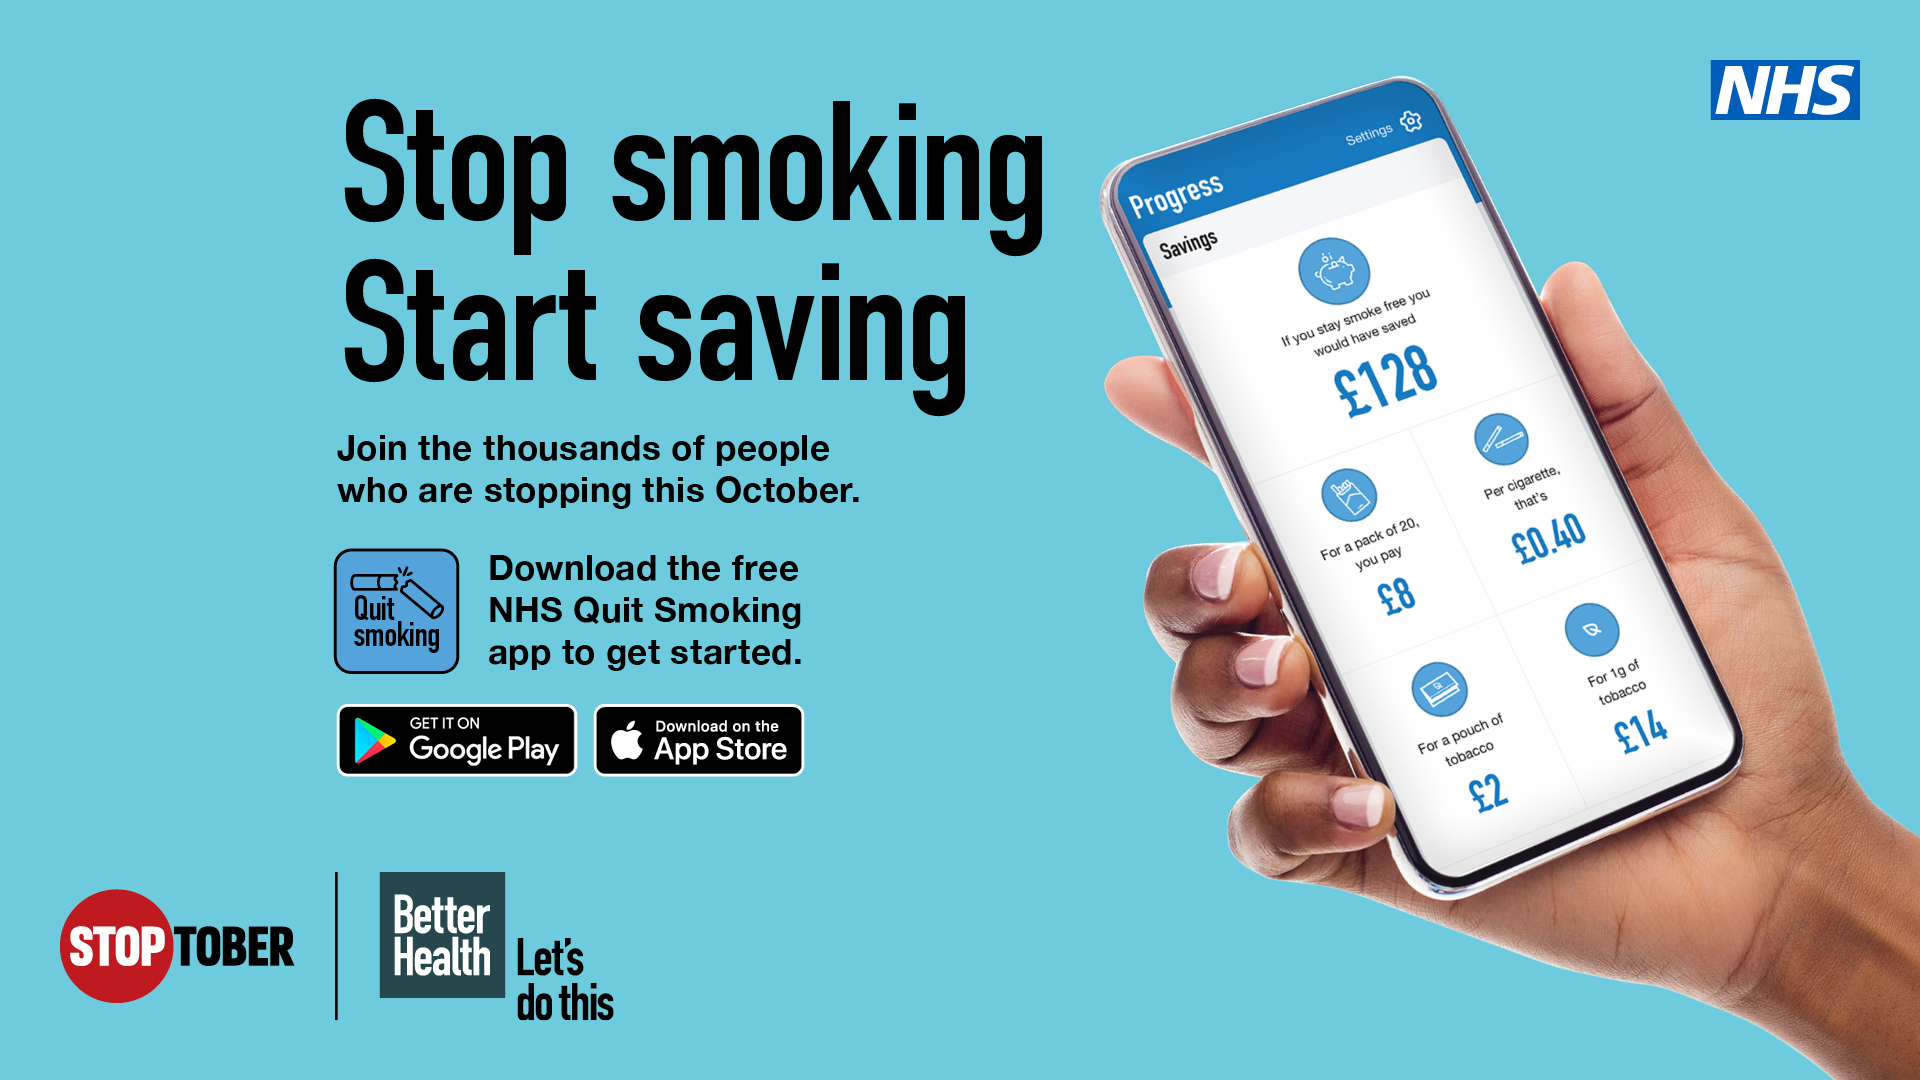 Stop smoking, start saving. Download the free NHS Quit Smoking app